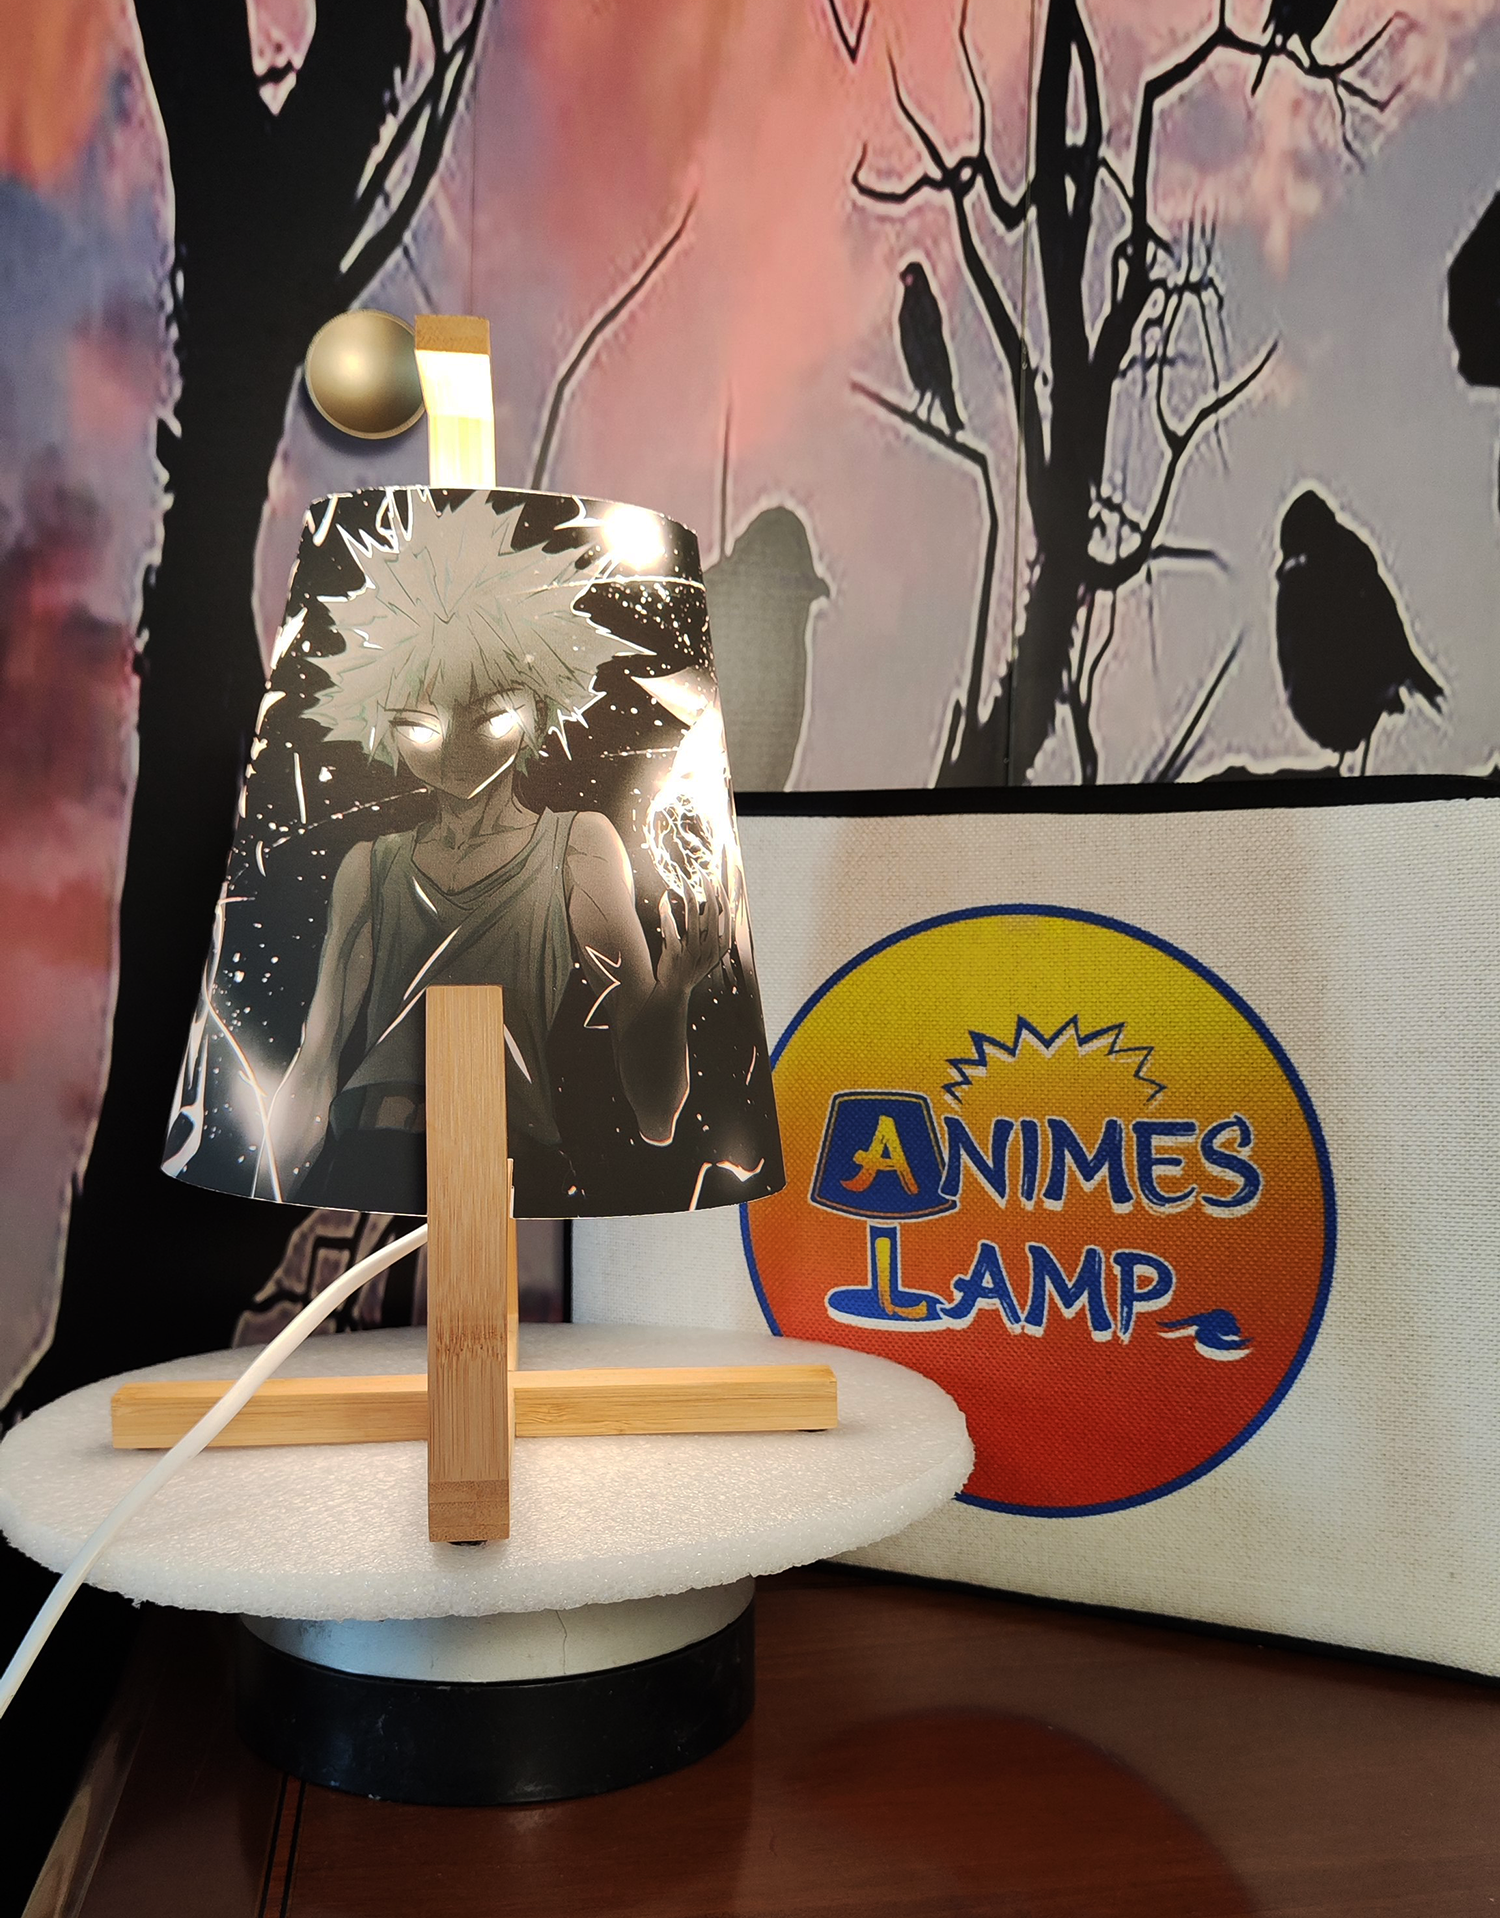 Una lampada anime del manga hunter hunter che mostra Kilua nella sua trasformazione elettrica, kilua è ritratto con un template grigio, gli occhi e i capelli illuminati di bianco, con delle scariche elettriche sull'immagine